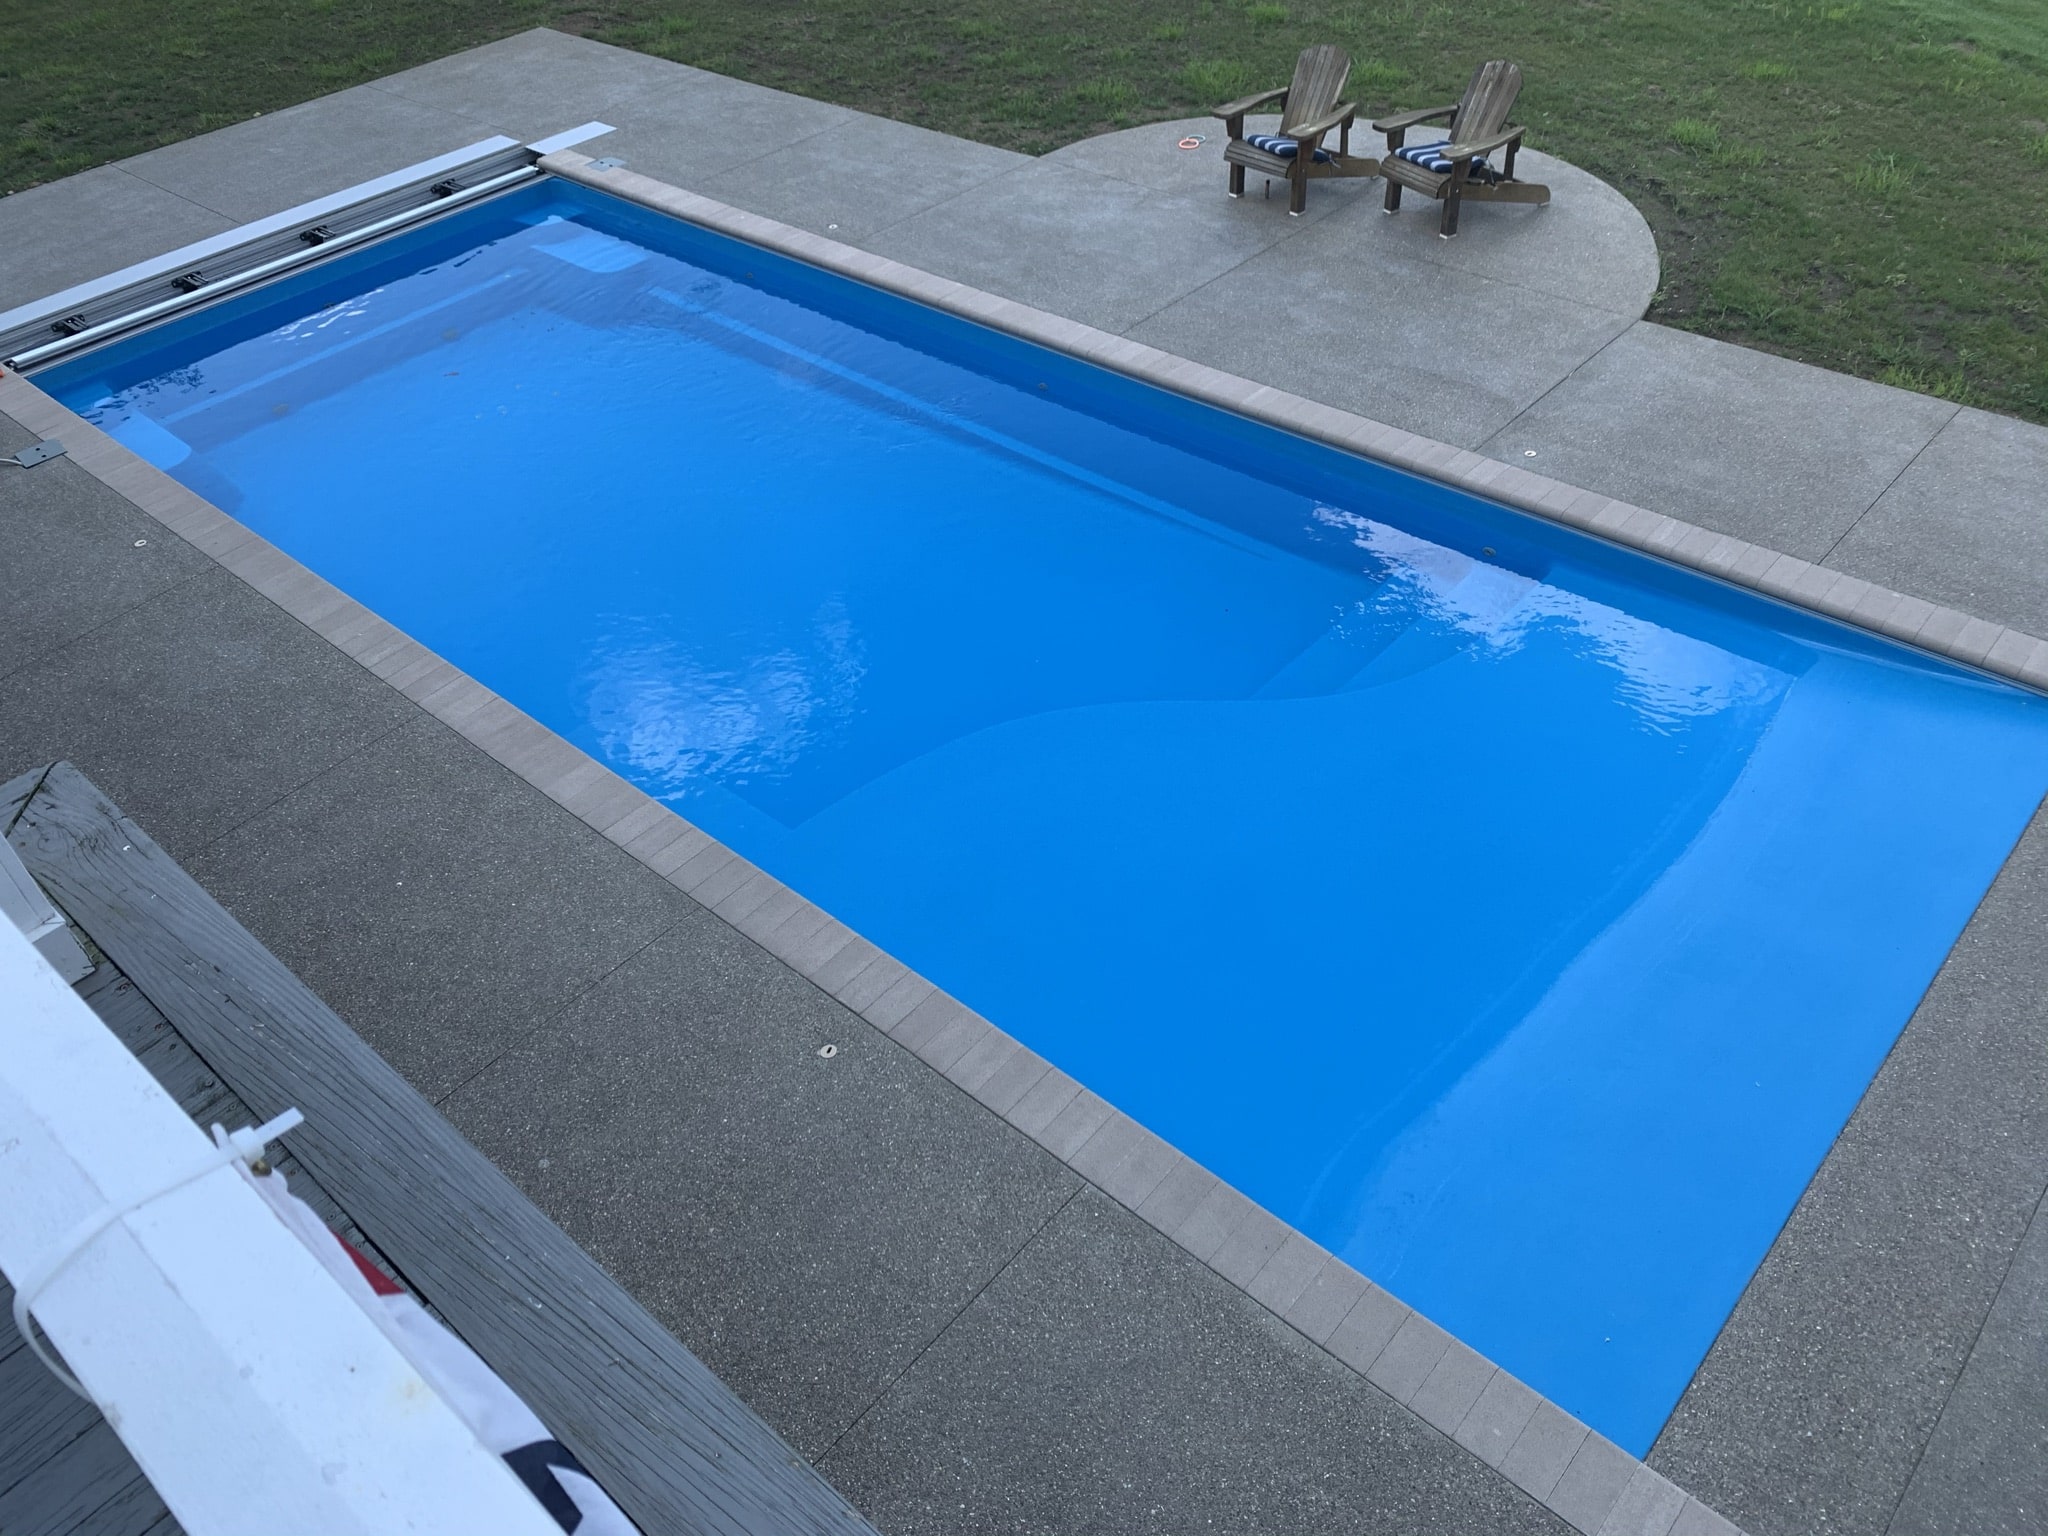 Latham Pools Installation in Columbus, Ohio